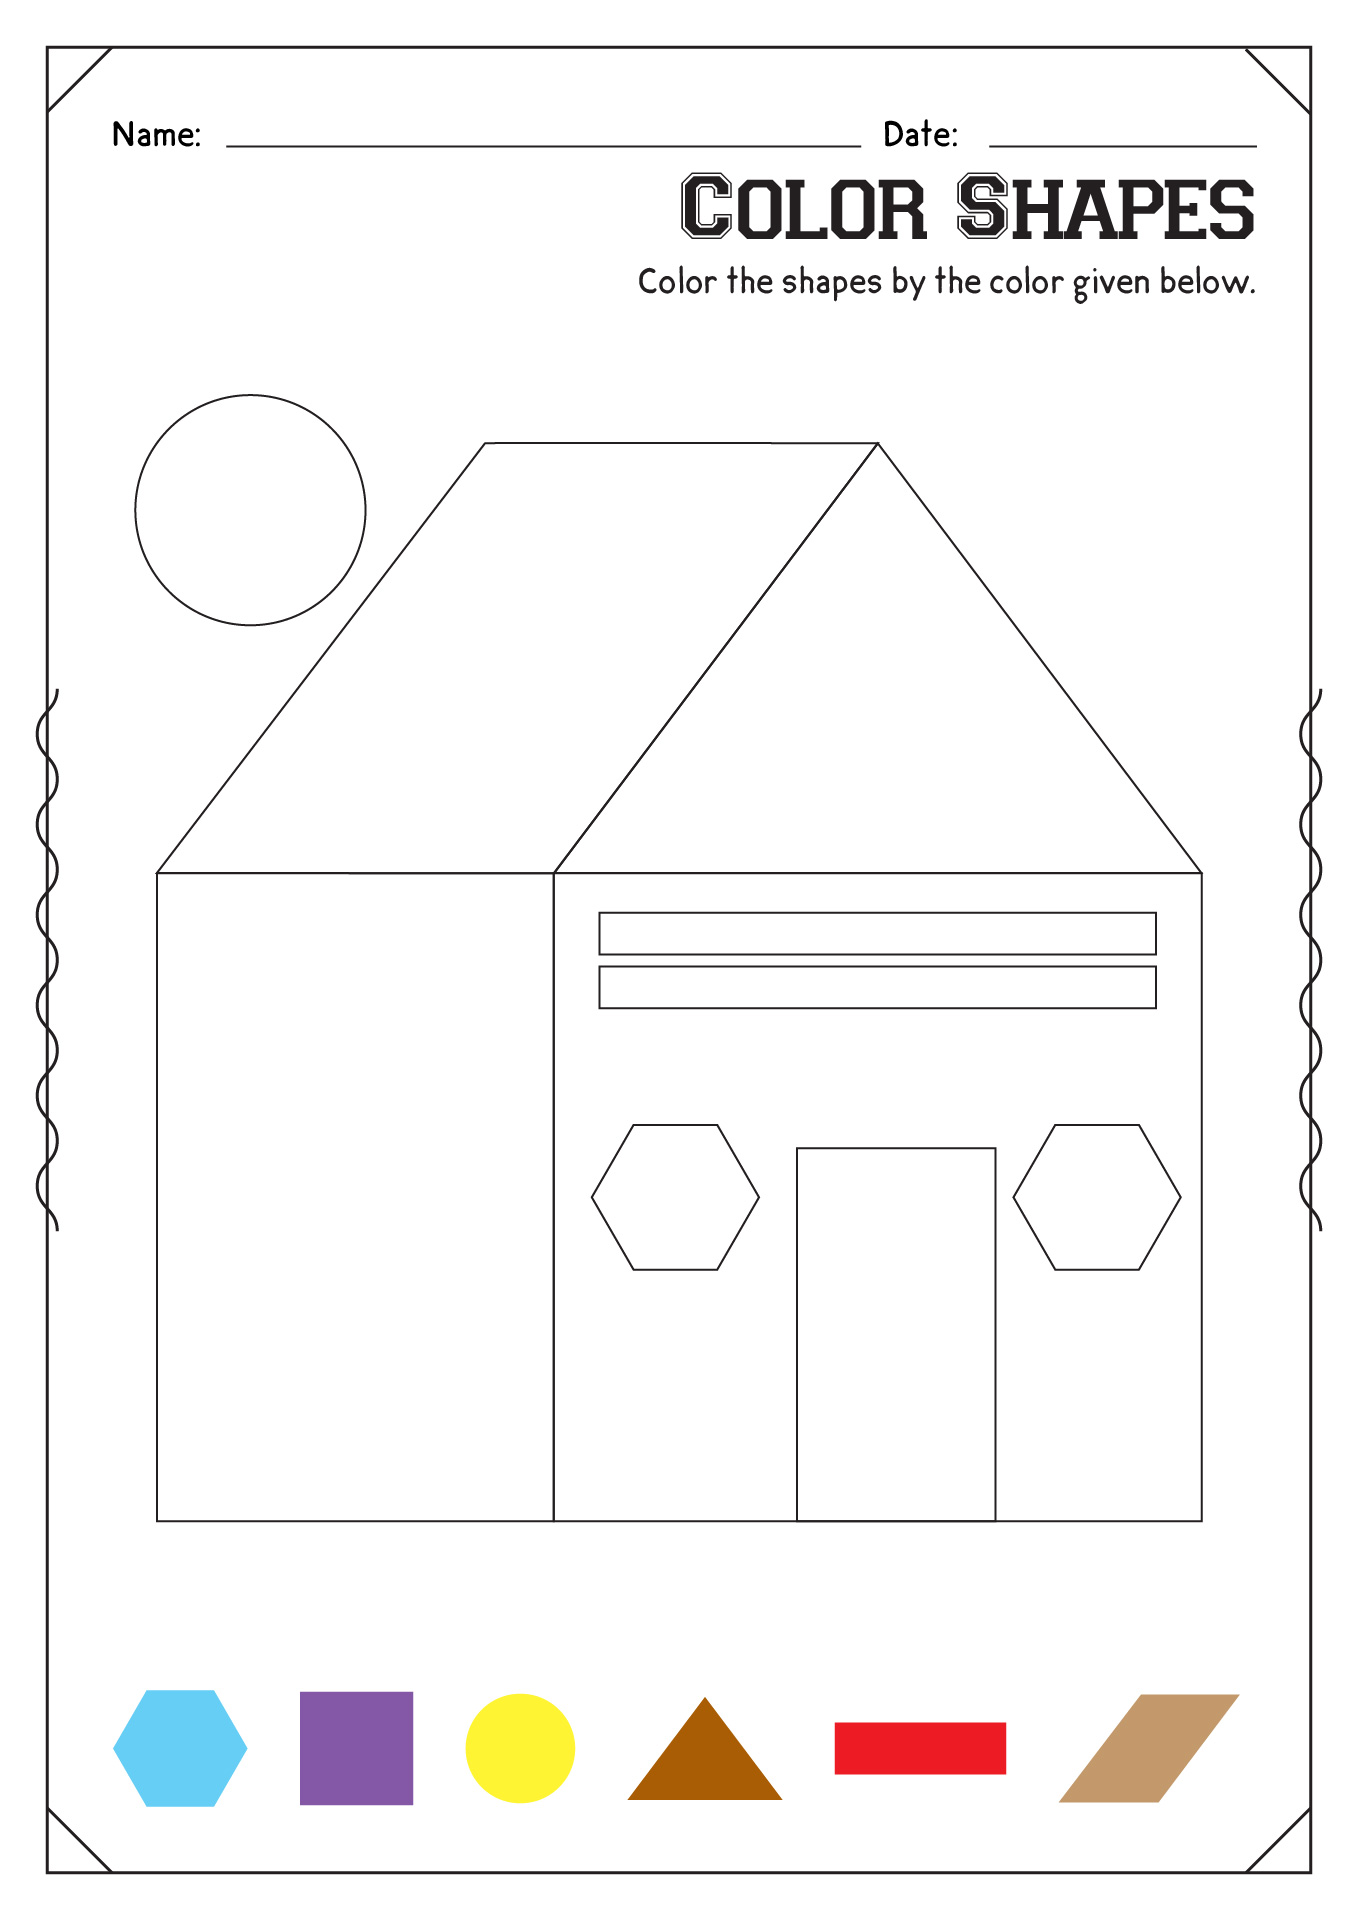 Color Shapes Worksheet Kindergarten Image